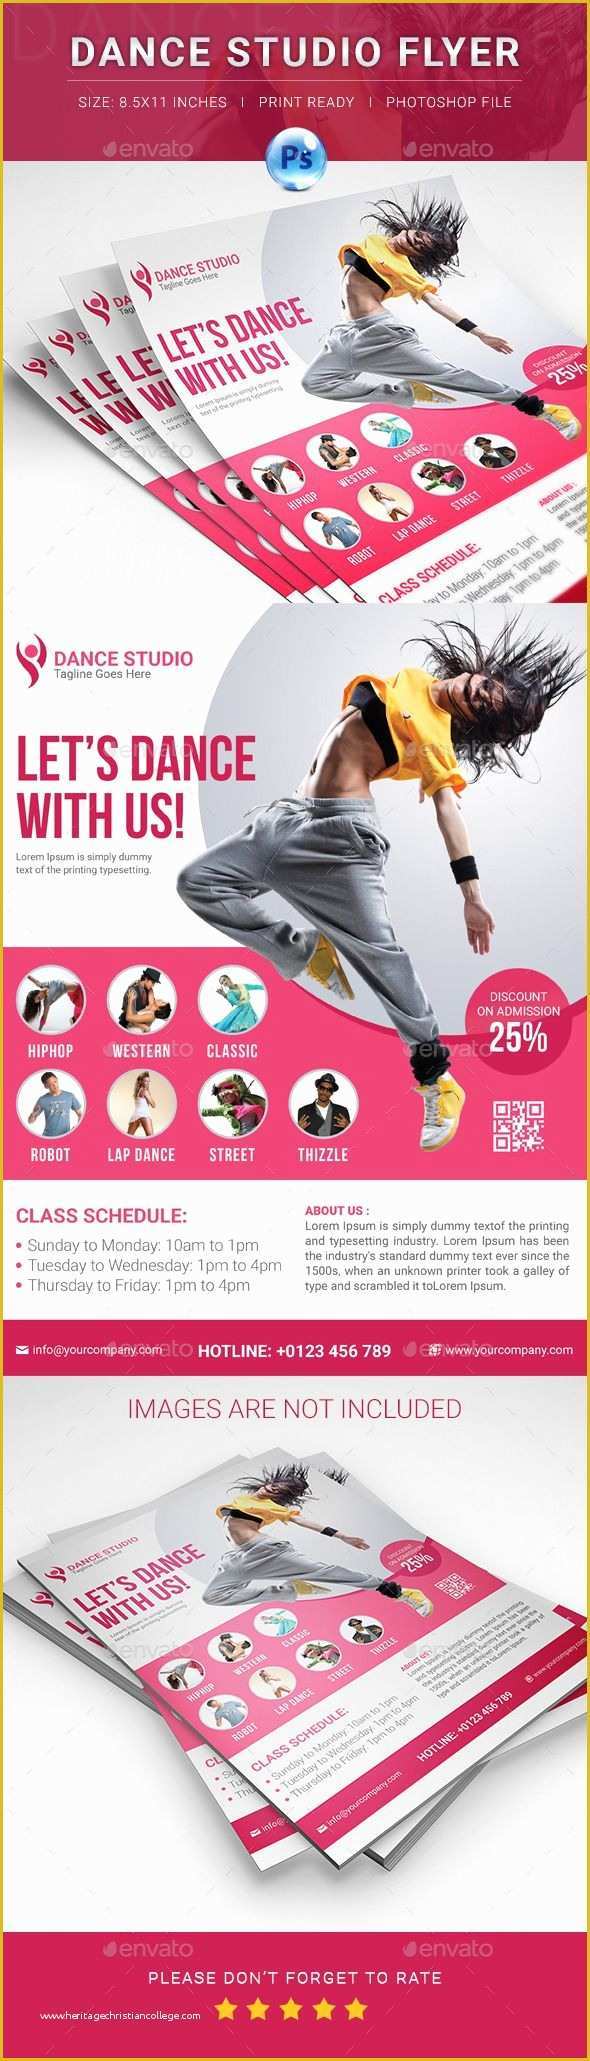 Free Website Templates for Dance Academy Of Dance Studio Flyer